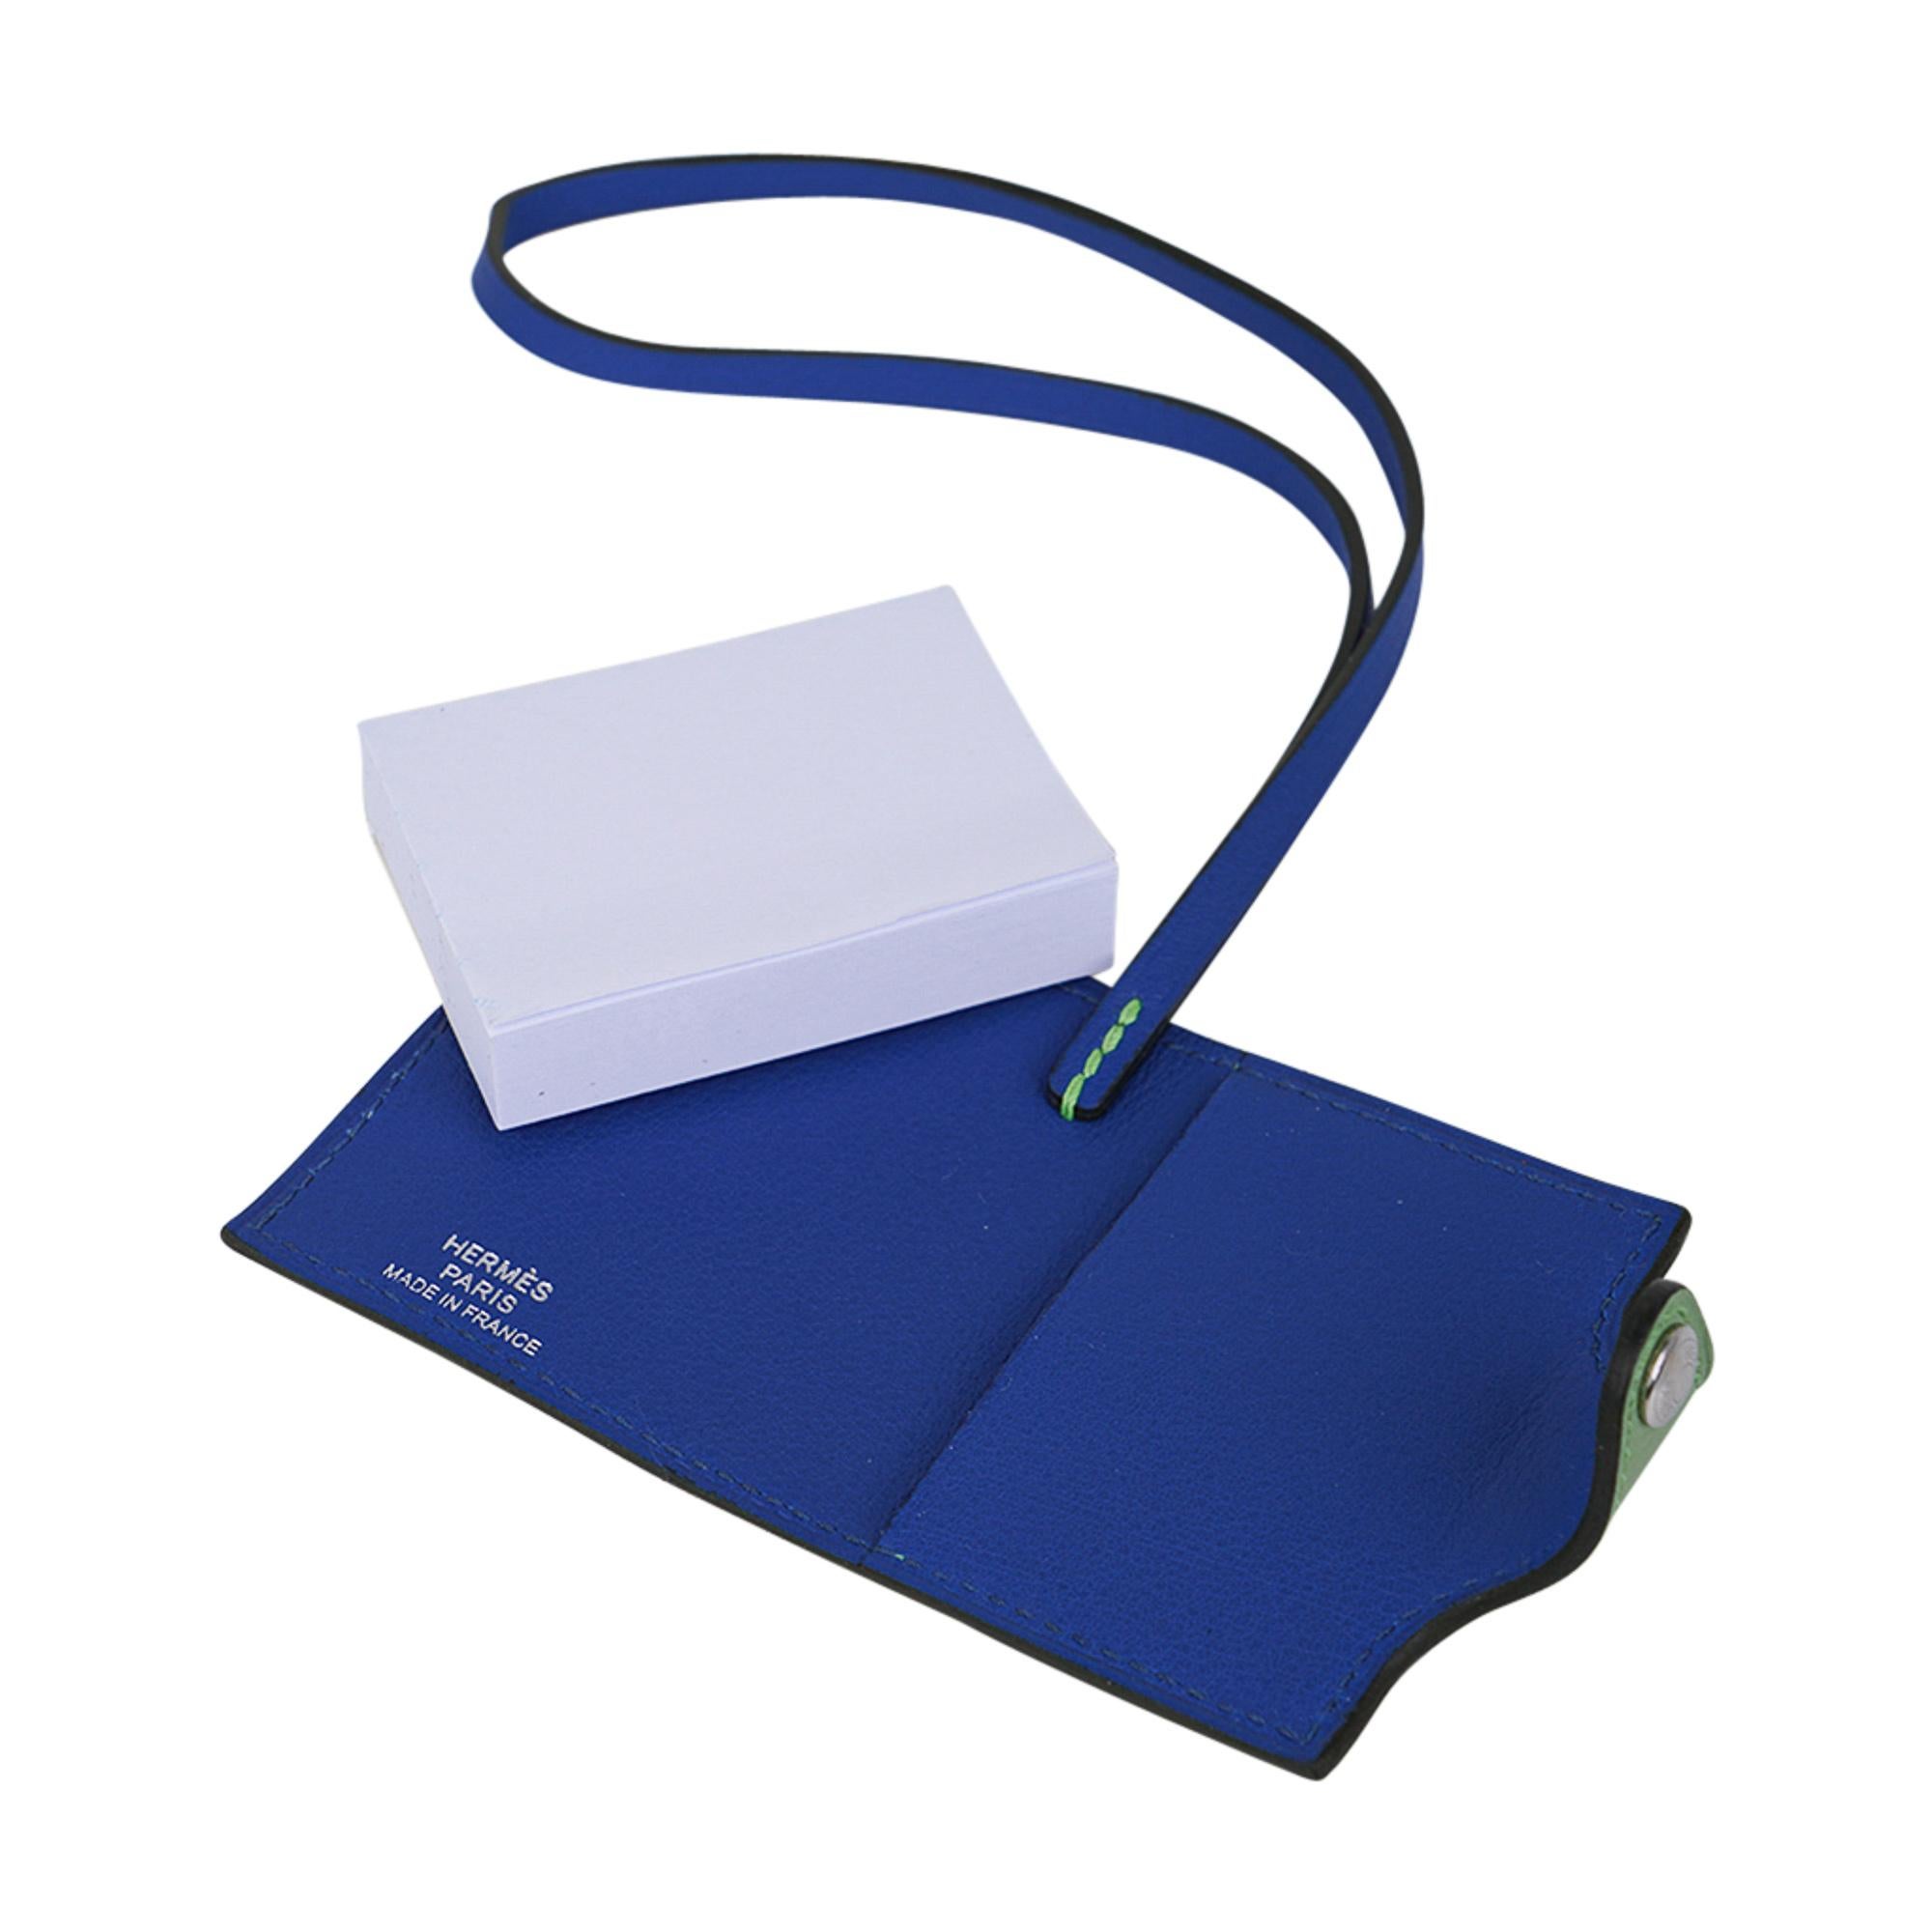 Mightychic bietet eine seltene Hermes Ulysse Nano Tasche Charme in Vert Criquet Evercolor und Bleu de France Swift vorgestellt.
Zweifarbiges Verso-Notizbuch mit nachfüllbarem Notizpapier.
Palladierte Beschläge.
Charmant und verspielt schmückt sie